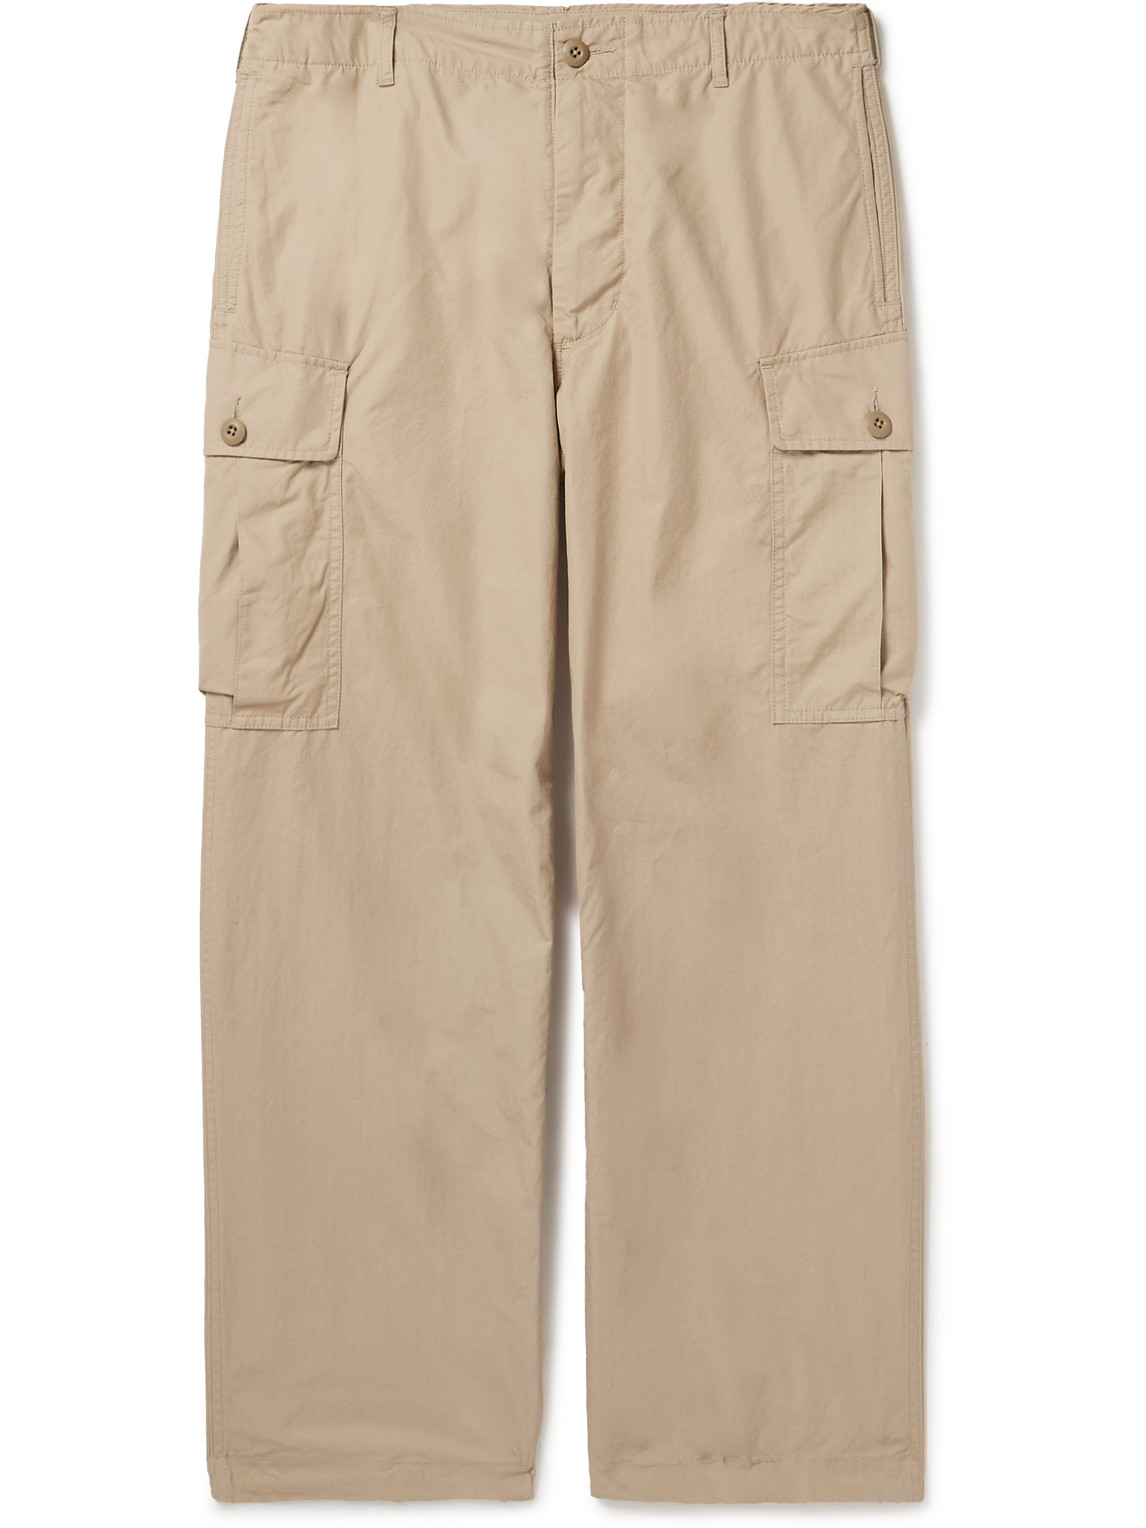 Beams Plus - Straight-Leg Cotton-Ripstop Cargo Trousers - Men - Neutrals - L von Beams Plus